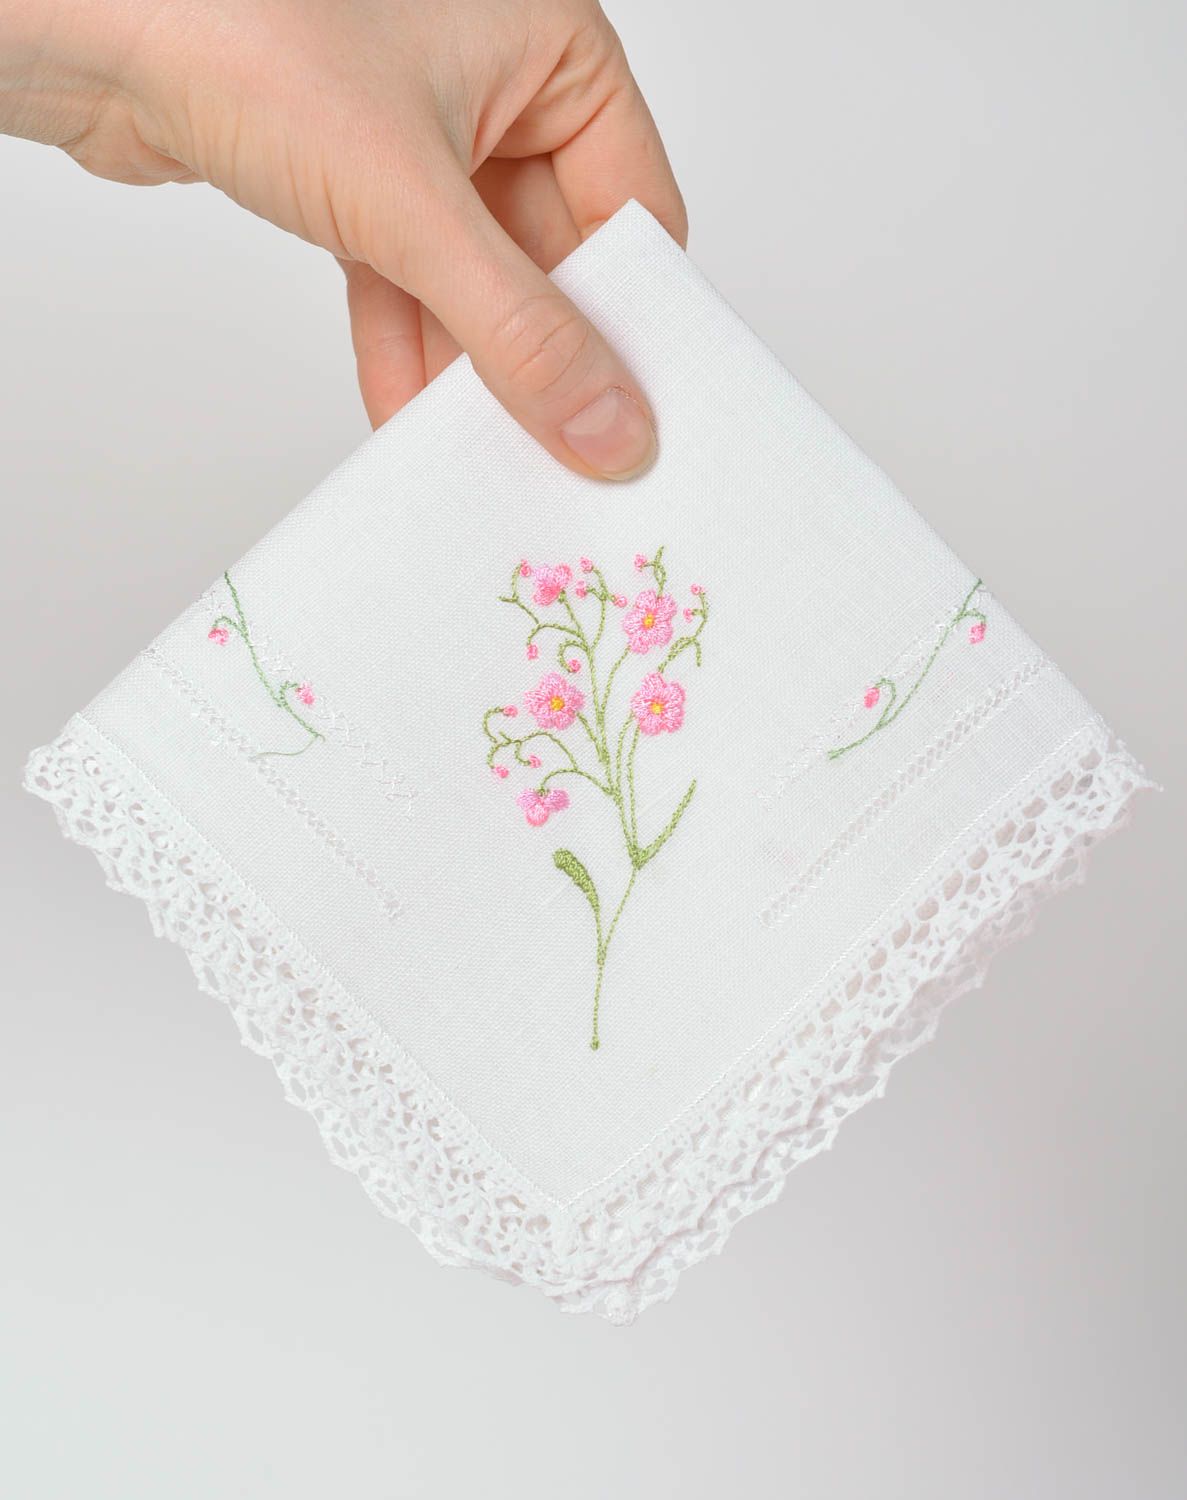 Mouchoir en tissu fait main Accessoire femme blanc carré avec fleurs Idée cadeau photo 3